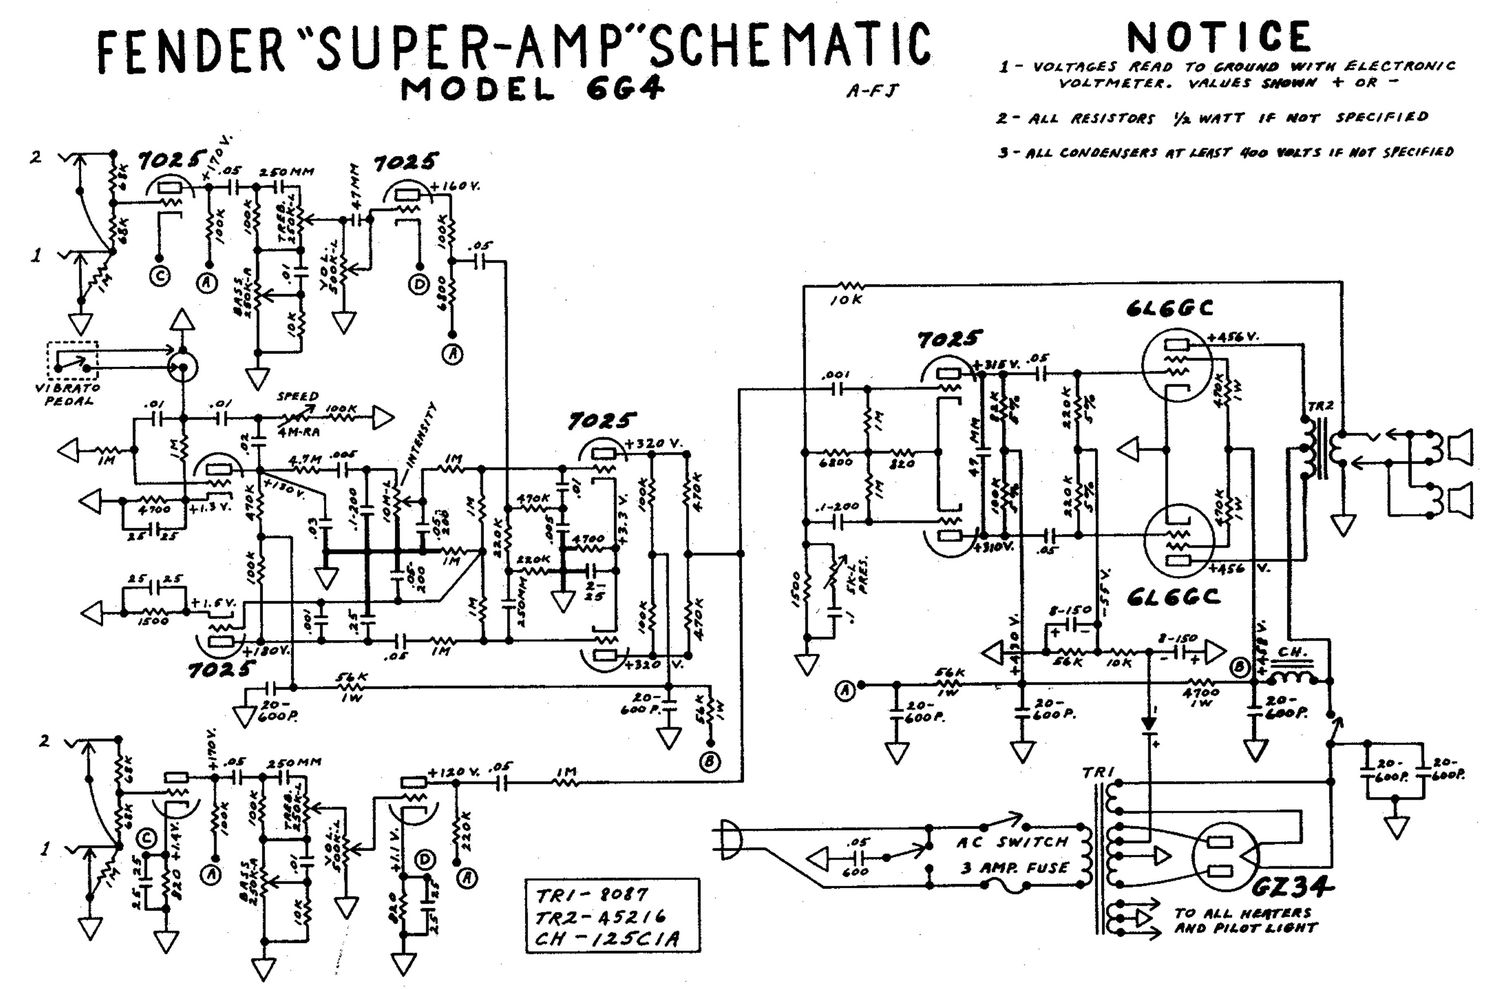 fender super 6g4 schematic